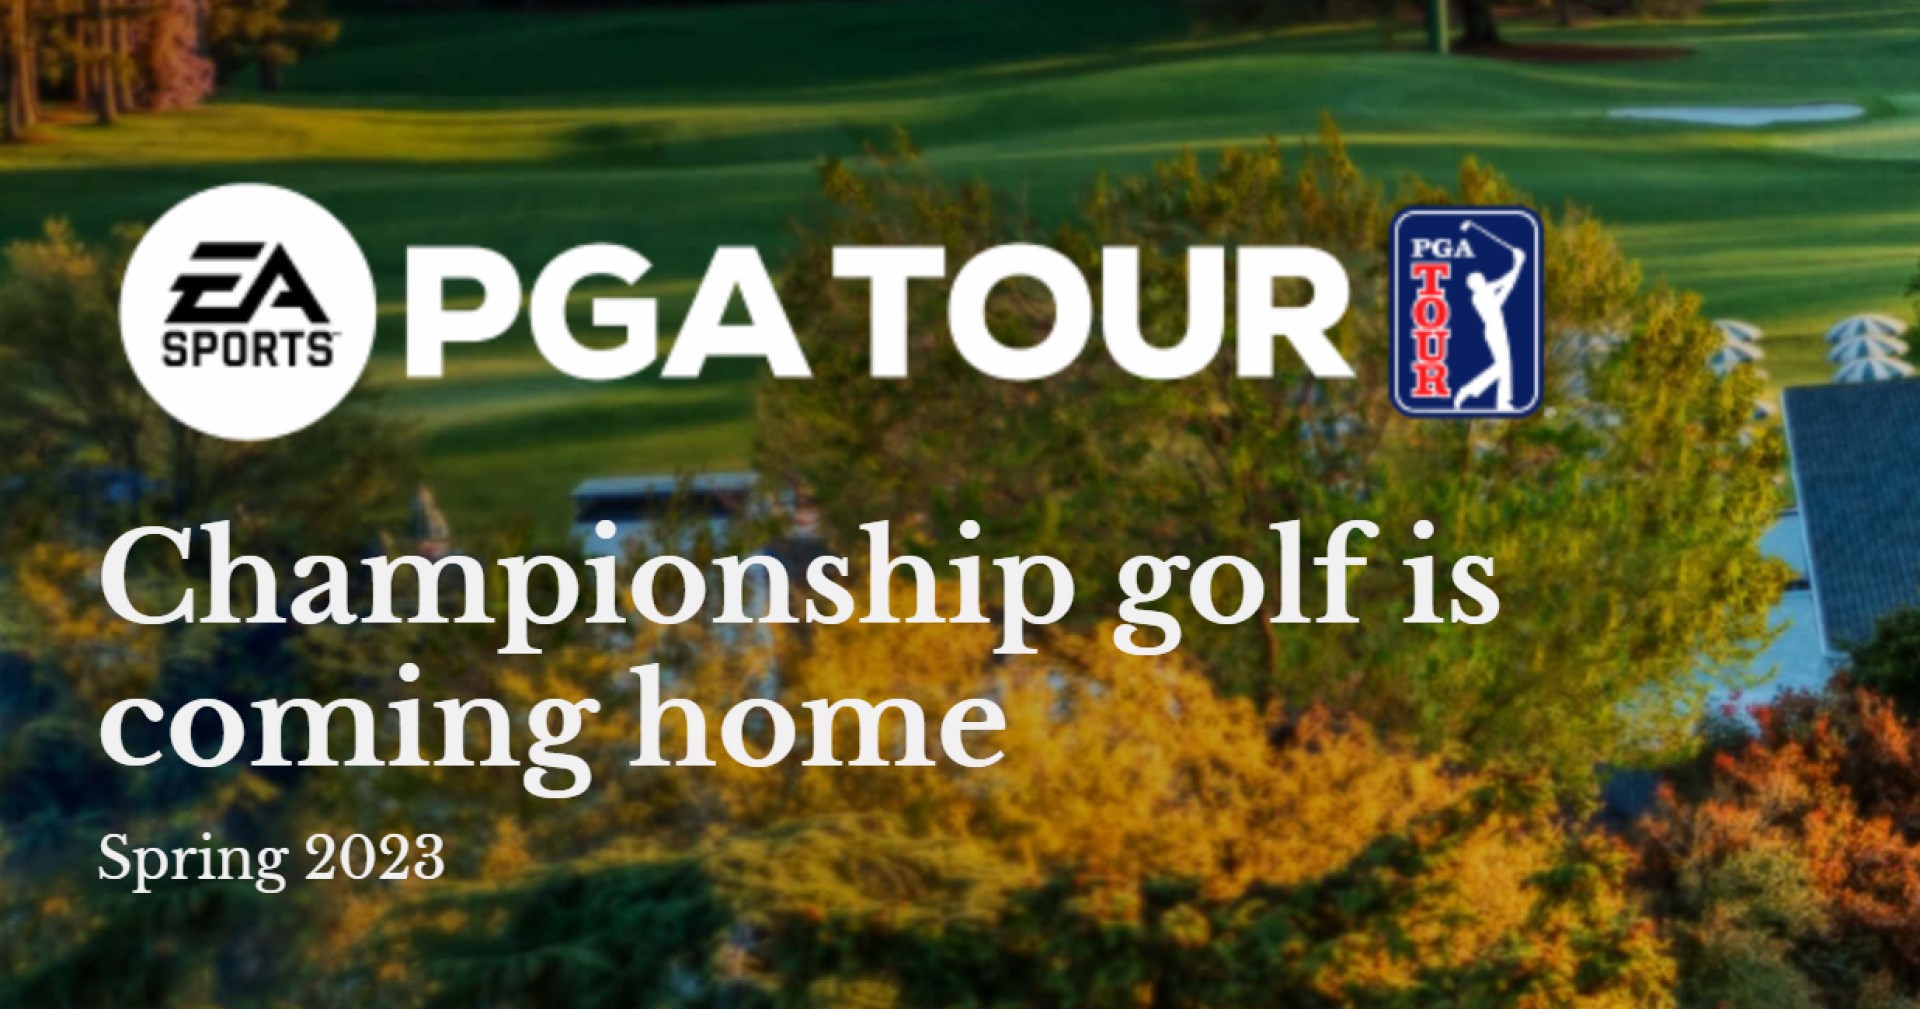 เลื่อนวางจำหน่าย EA Sports PGA Tour ไปเป็นปีหน้า